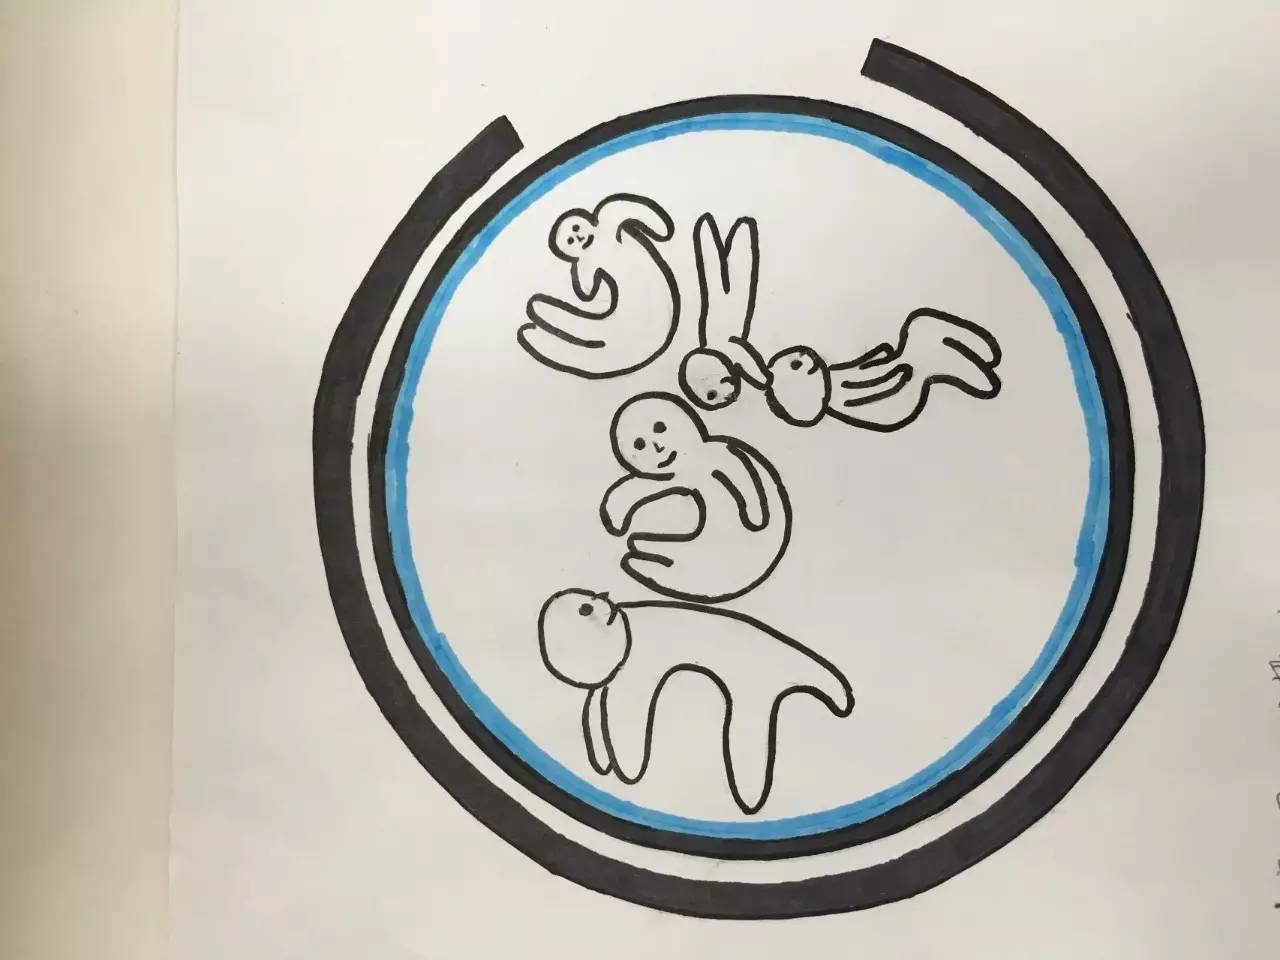 【宿舍logo设计大赛】最美宿舍logo投票开始啦!